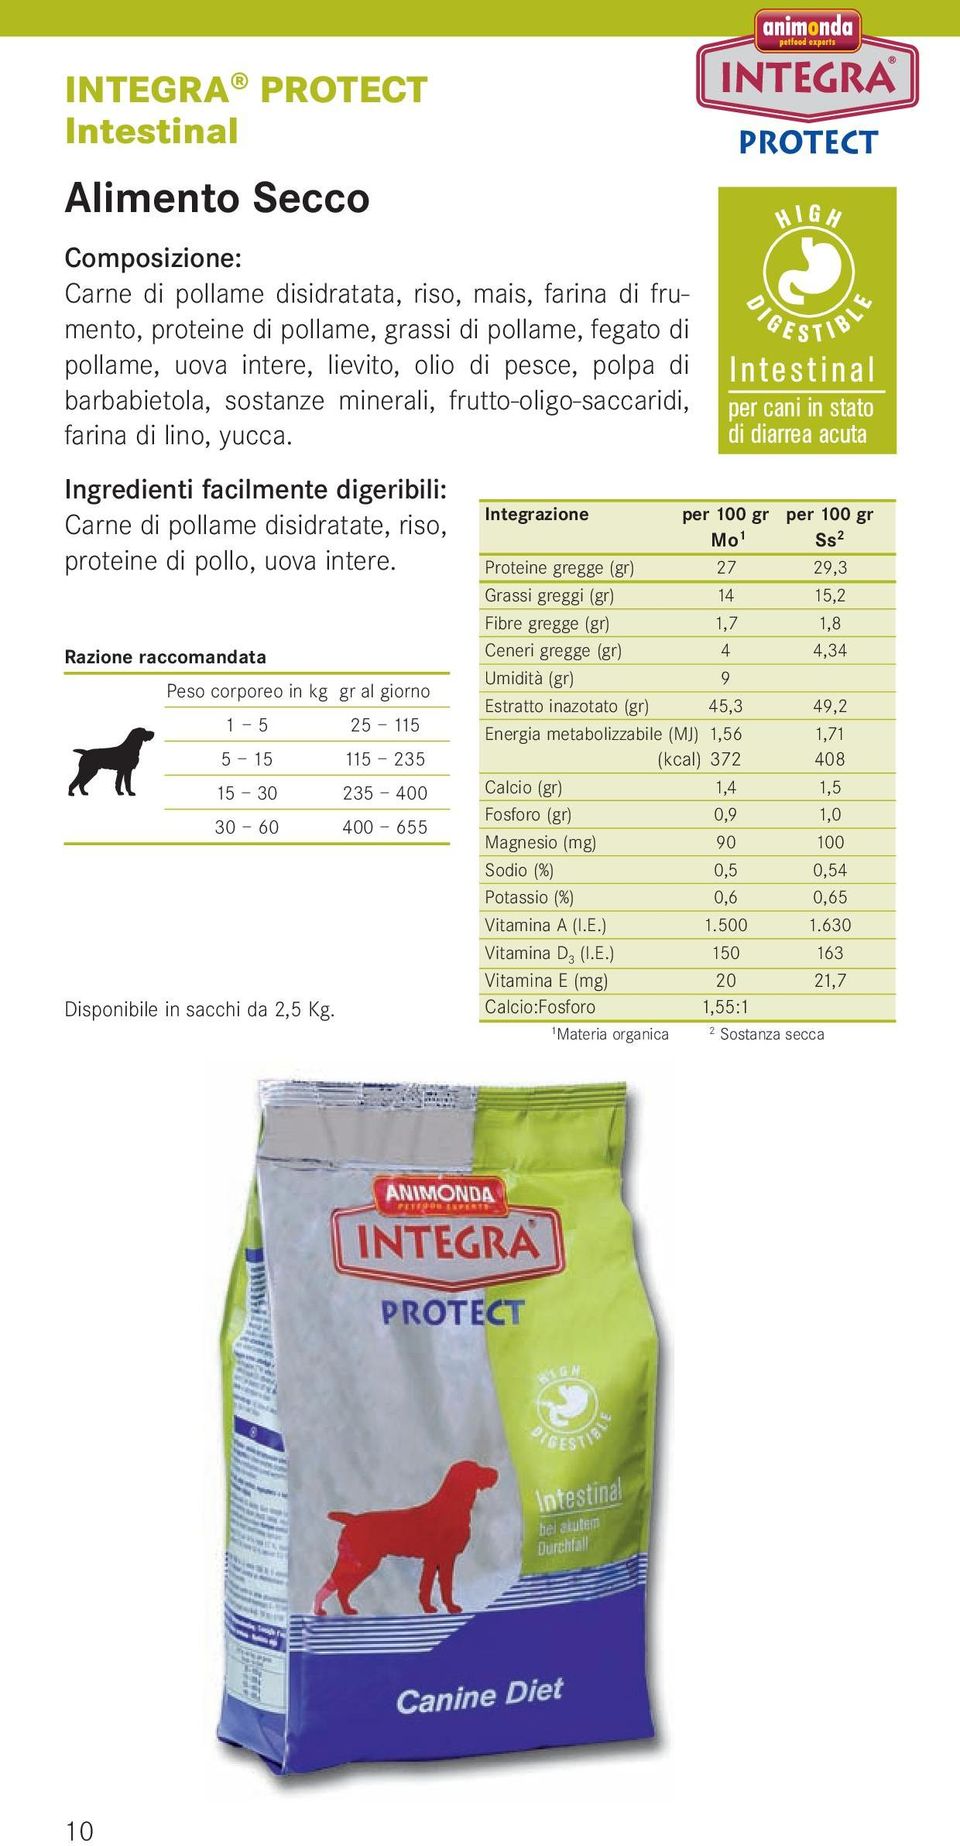 Intestinal per cani in stato di diarrea acuta Ingredienti facilmente digeribili: Carne di pollame disidratate, riso, proteine di pollo, uova intere.